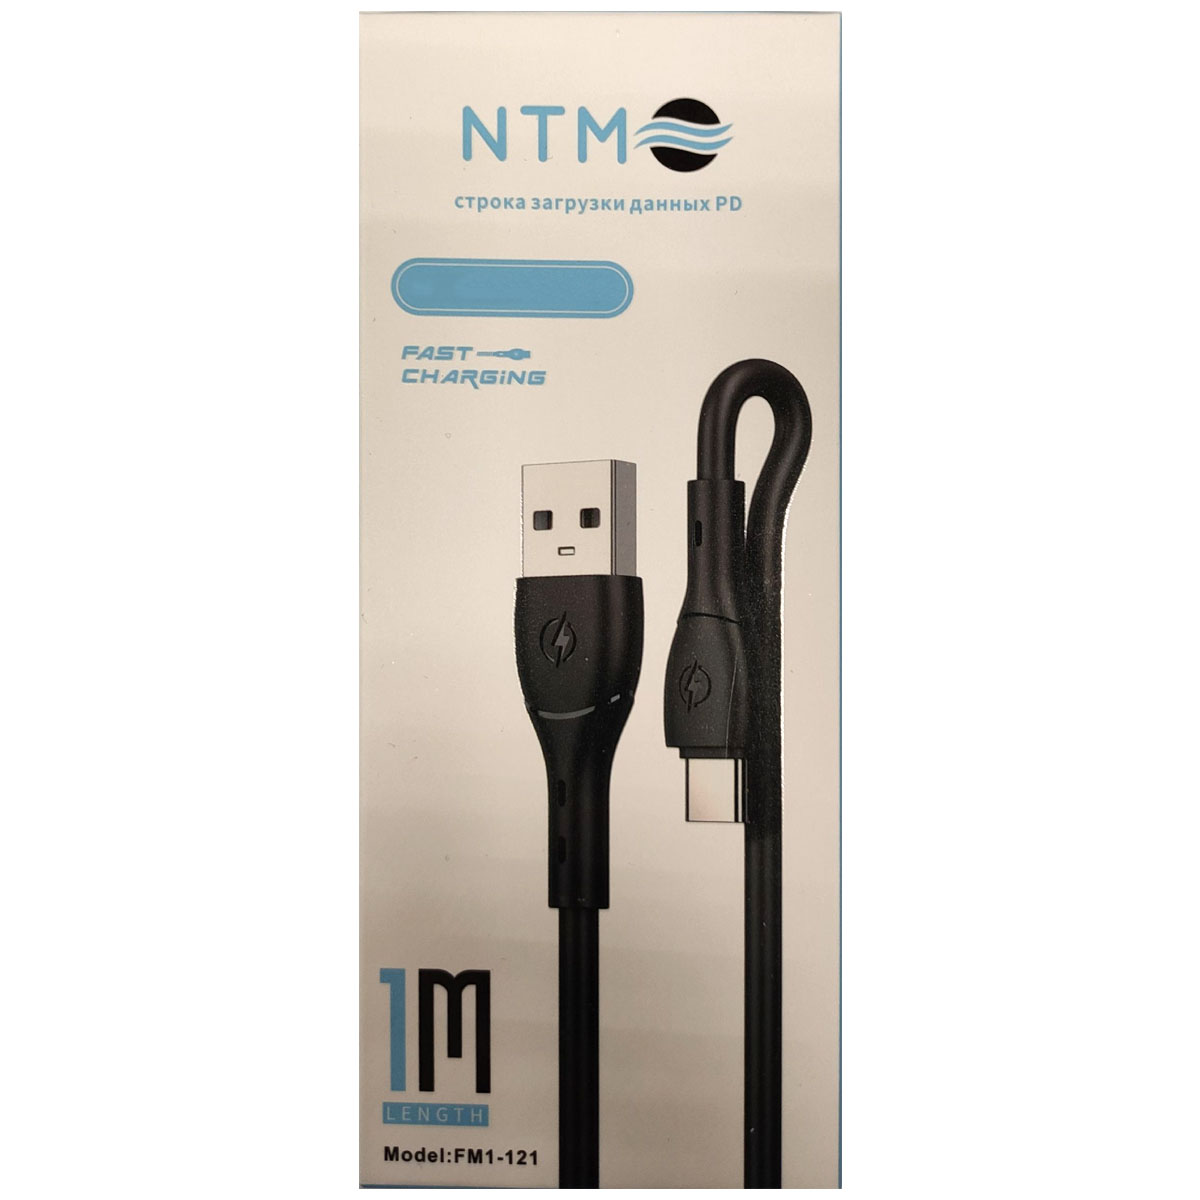 Кабель NTM FM1-121 USB Type C, длина 1 метр, цвет черный